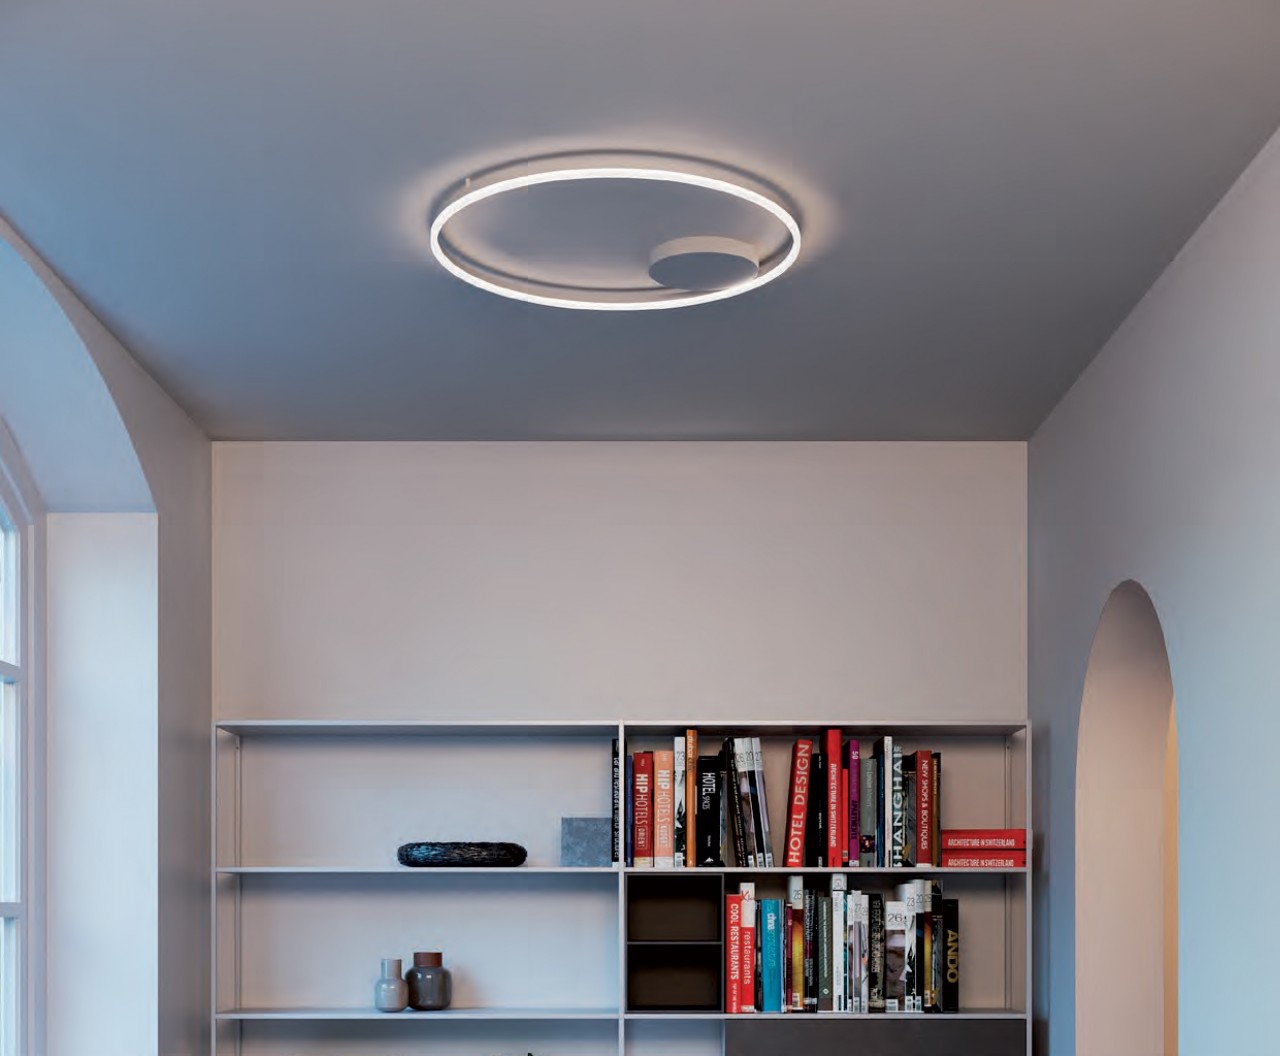 Uma iluminação moderna para qualquer espaço: o Plafon Orbit. Esta bela peça dará um toque único à decoração da sua casa!